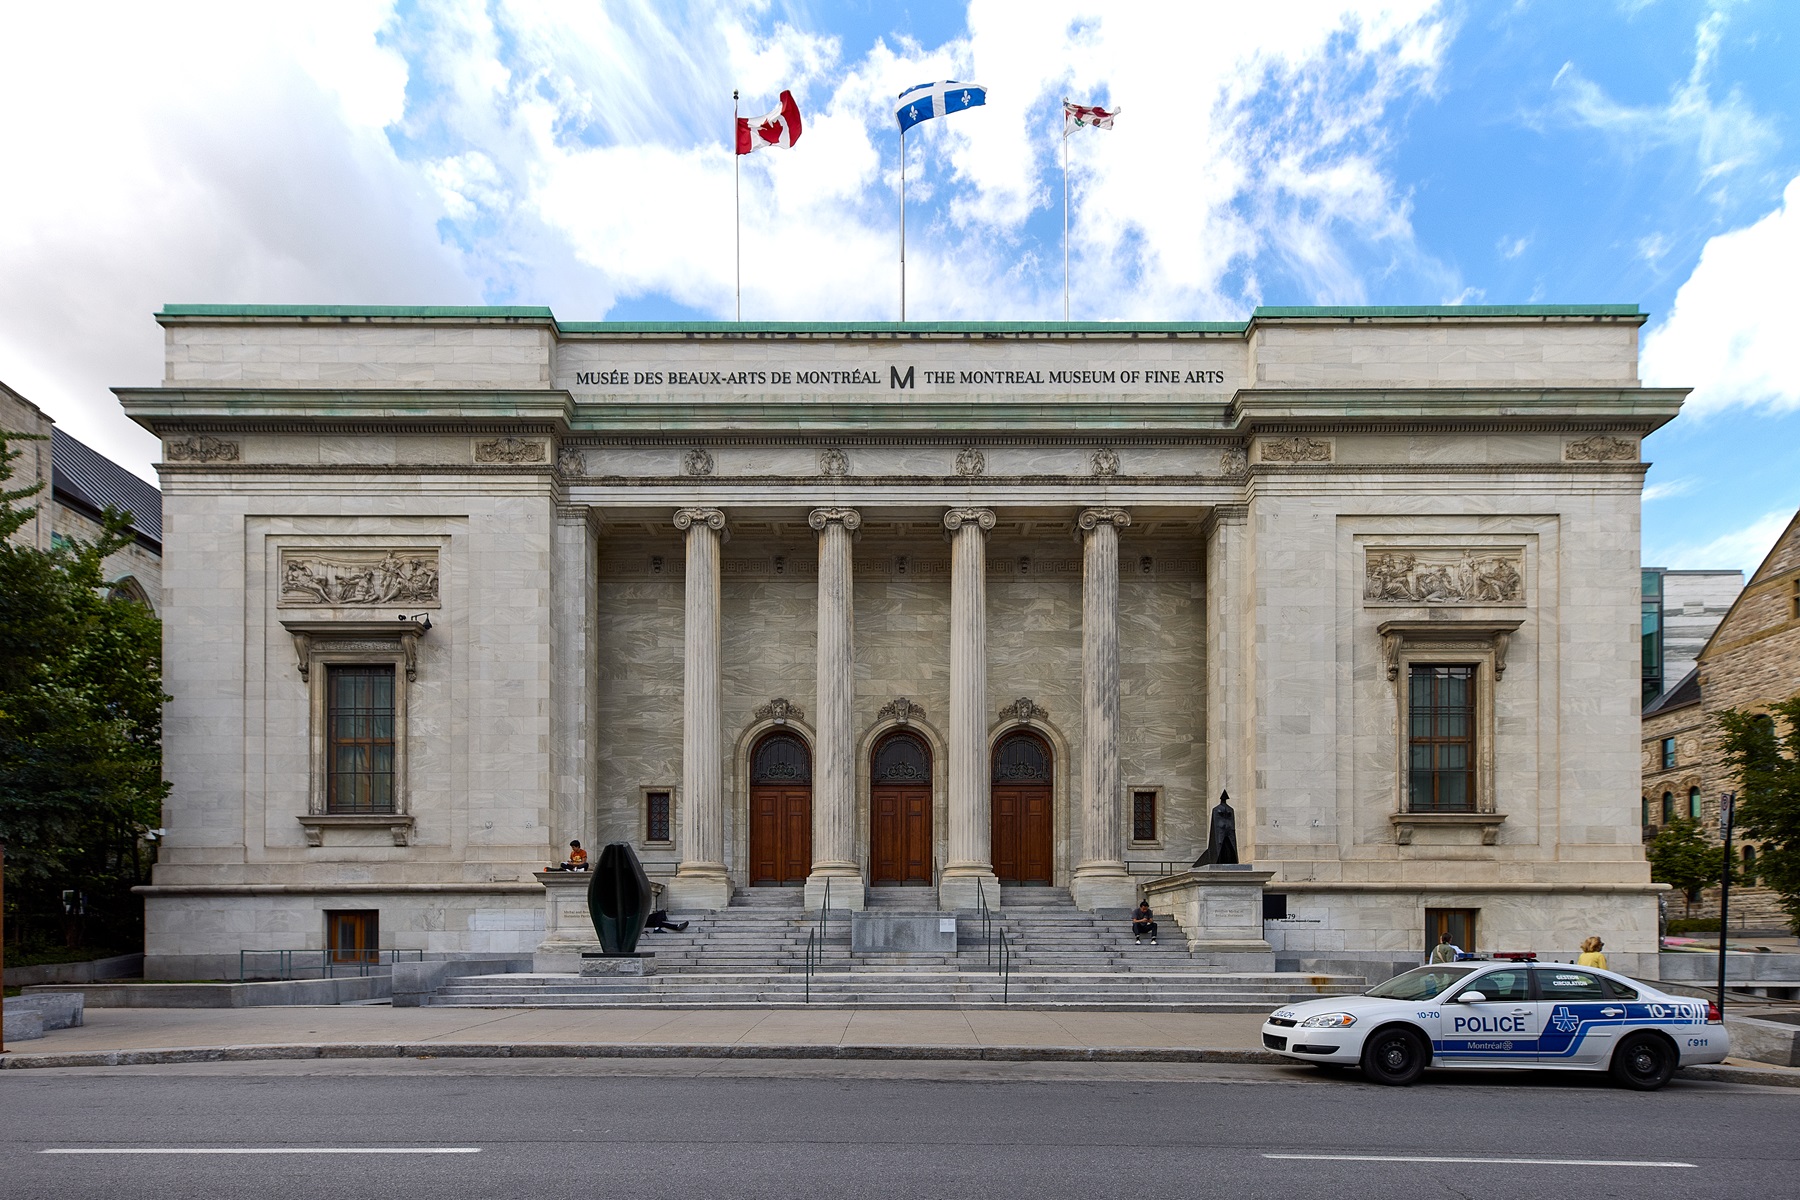 Musée des Beaux-Arts de Montréal